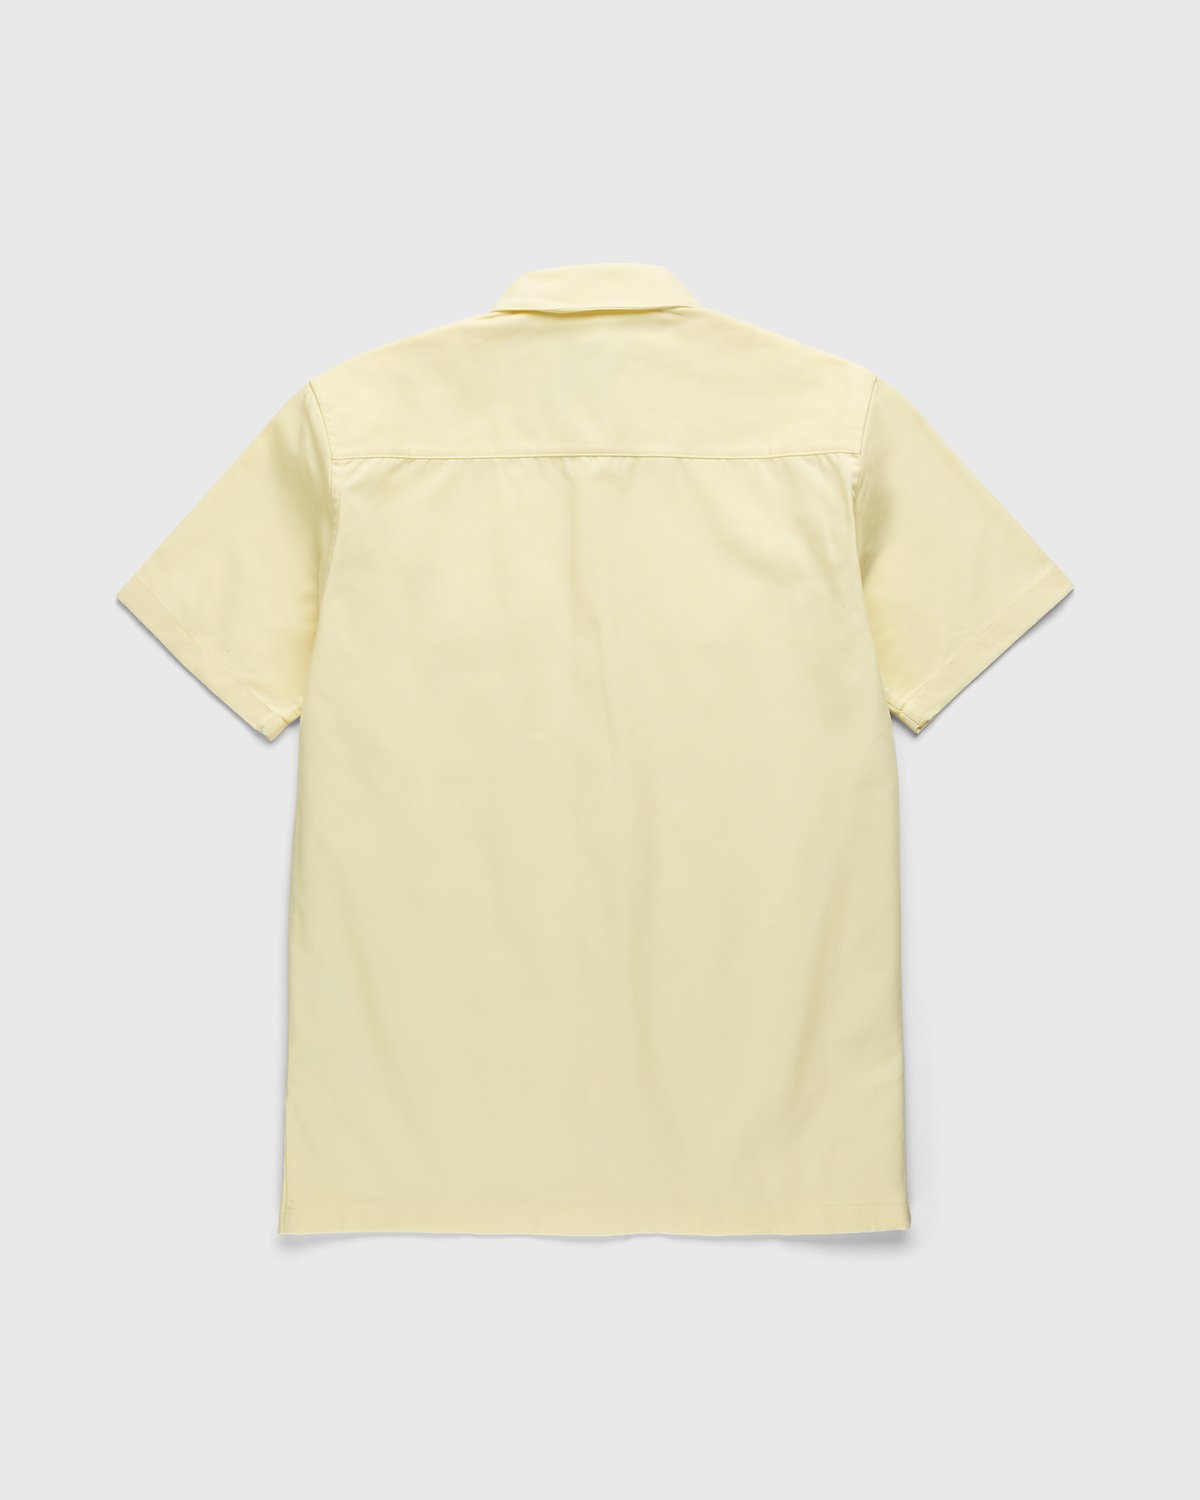 Carhartt WIP - Master Shirt Soft Yellow - Clothing - Yellow - Image 2